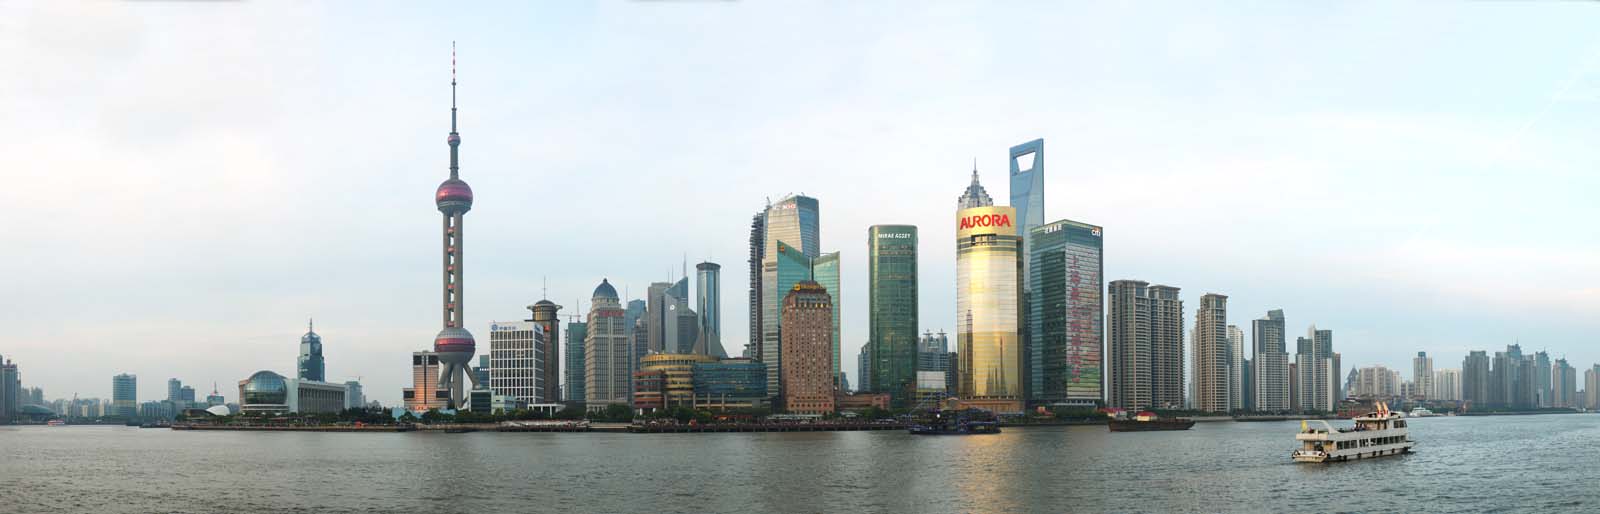 fotografia, material, livra, ajardine, imagine, proveja fotografia,Um arranha-cu de Shanghai, edifcio de edifcio alto, navio, cu azul, arranha-cu